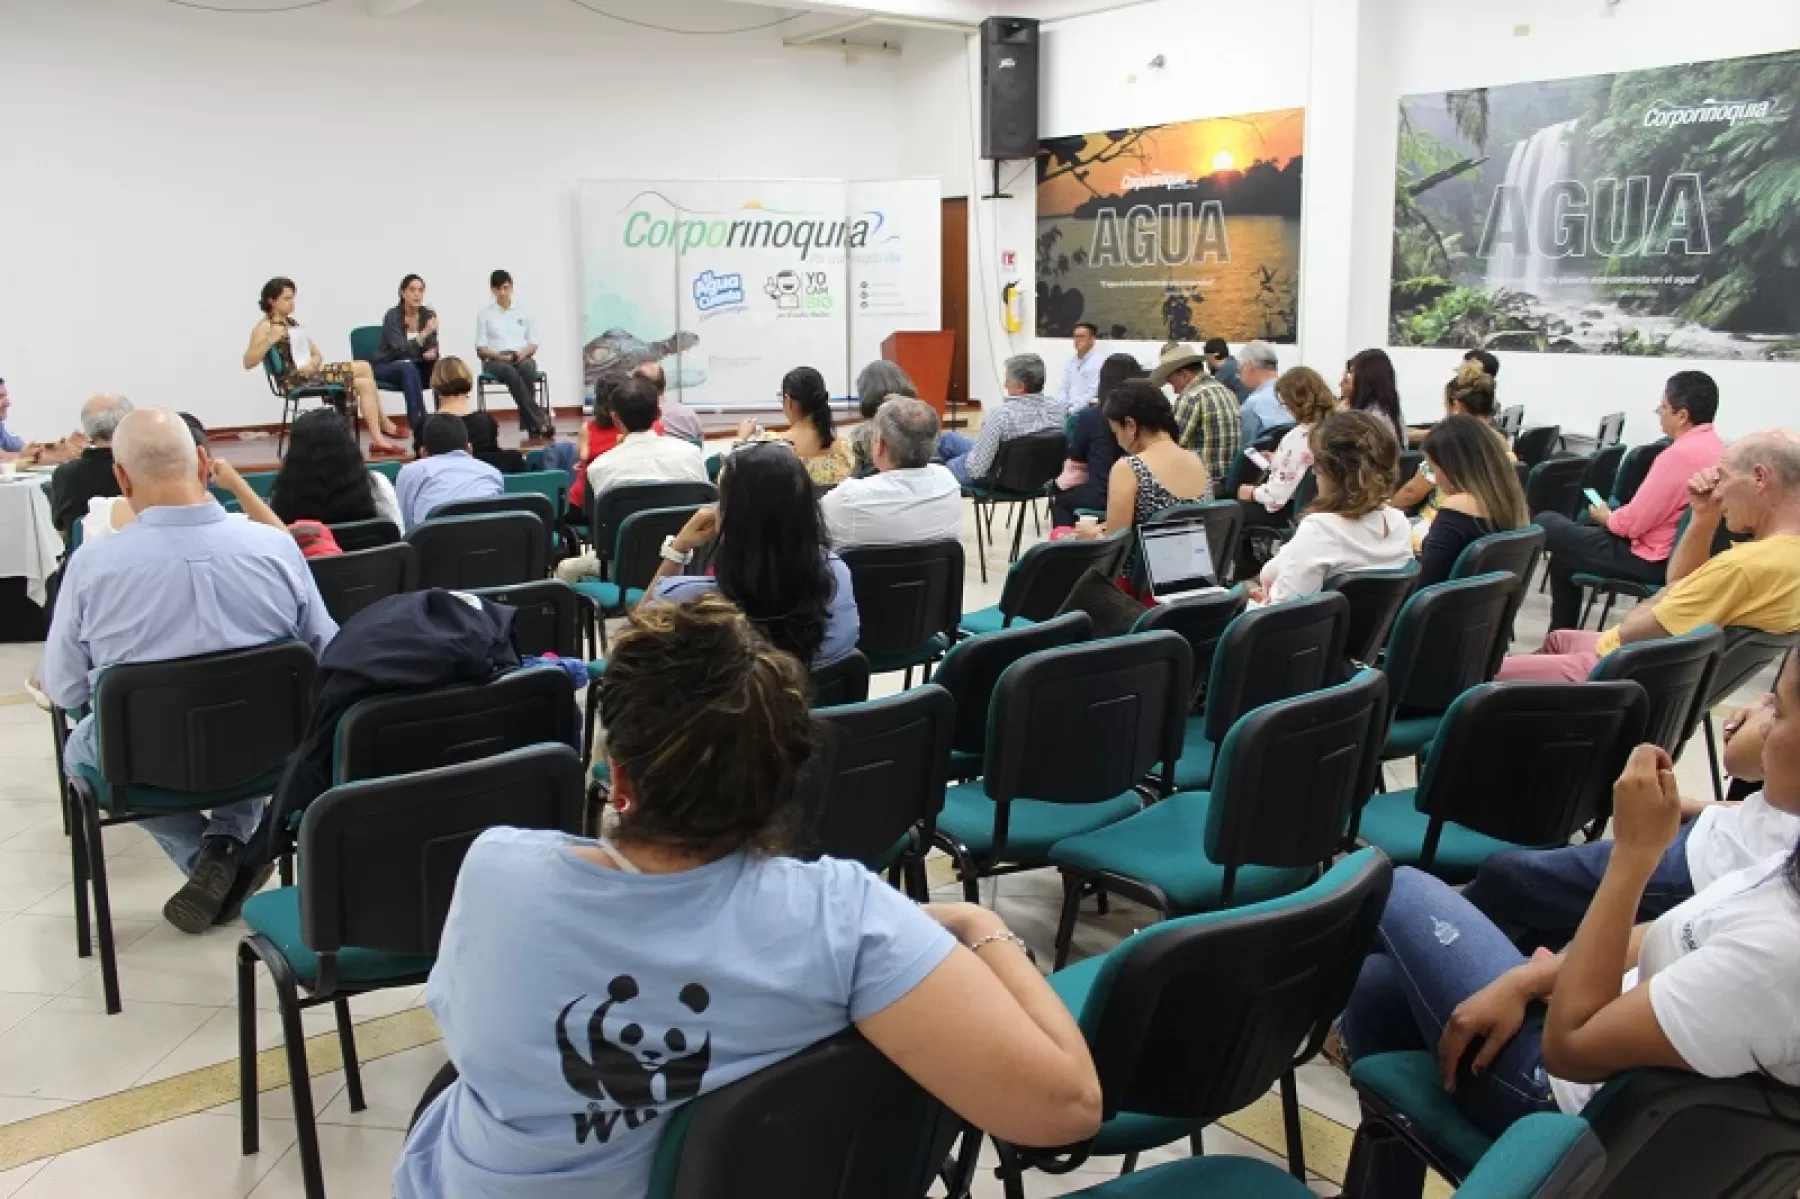 Con el objetivo de compartir experiencias locales y nacionales, entorno a la conservación, se llevó a cabo en el Yopal, Casanare, el lanzamiento y conformación de la Red de Reservas Naturales de la Sociedad Civil.